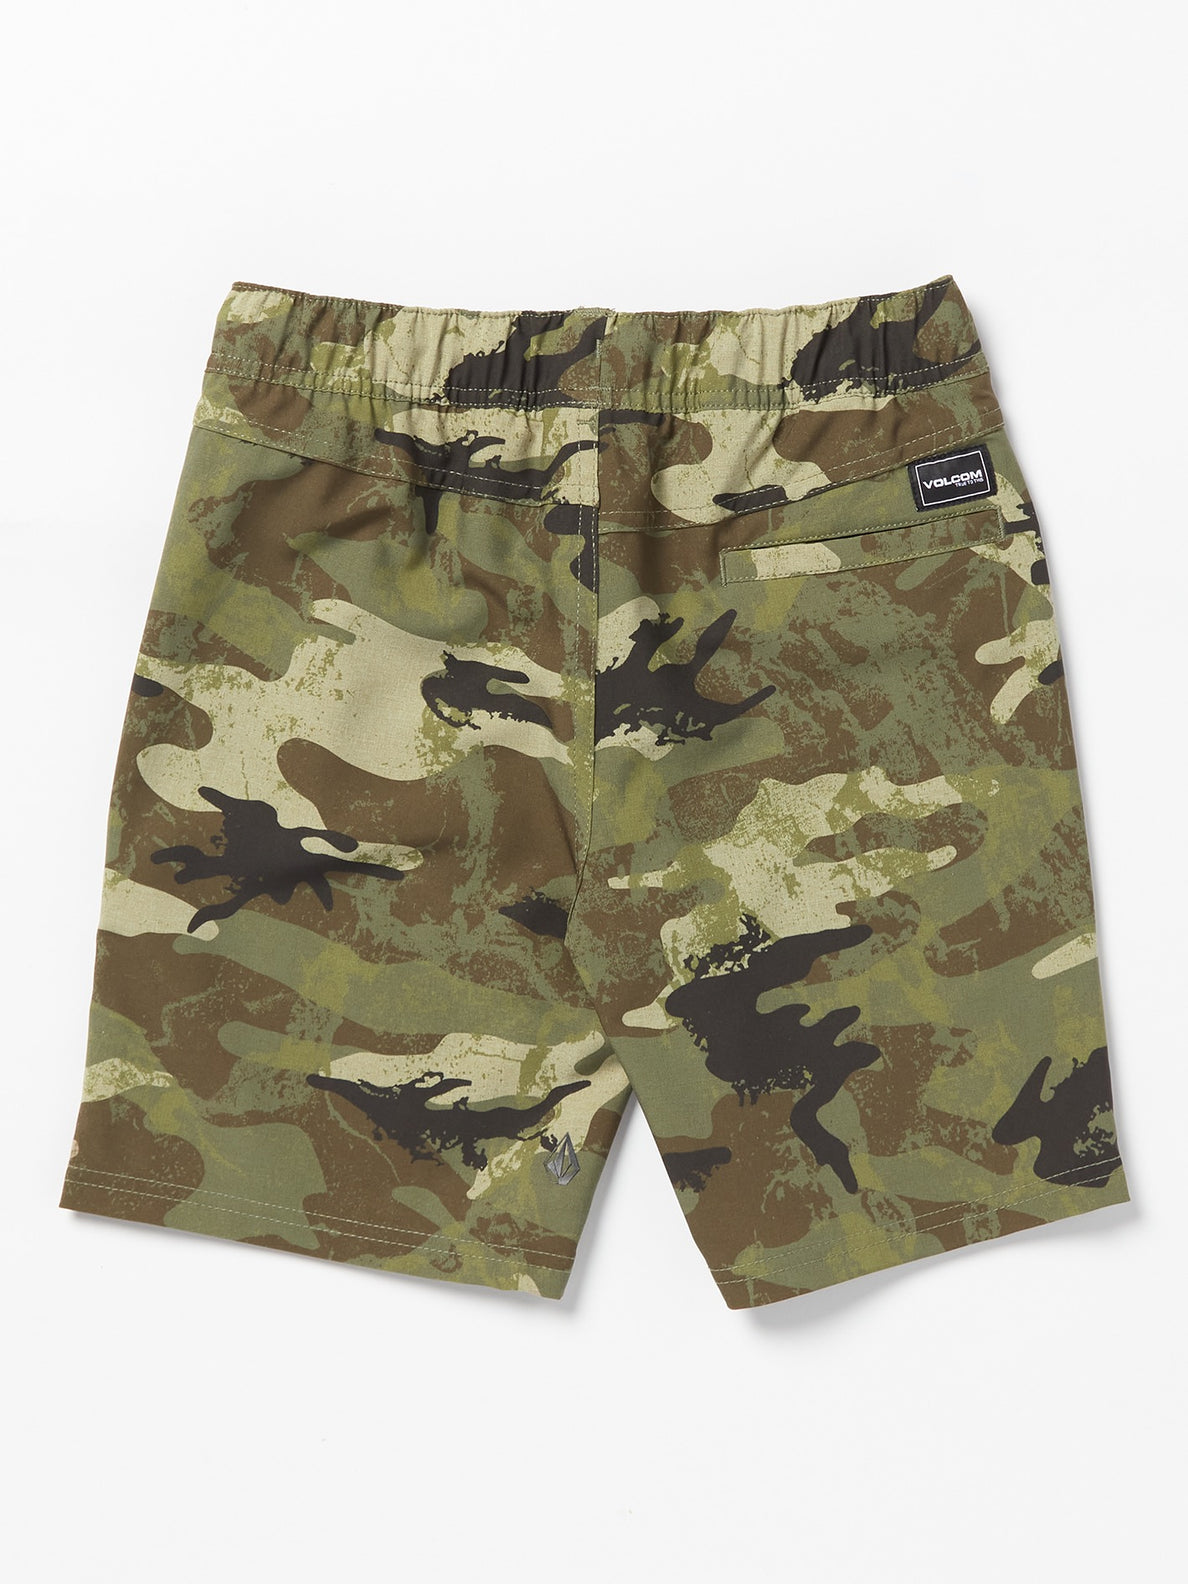 Big Boys Elastic Waist Printed Hybrid Shorts - Army Camo